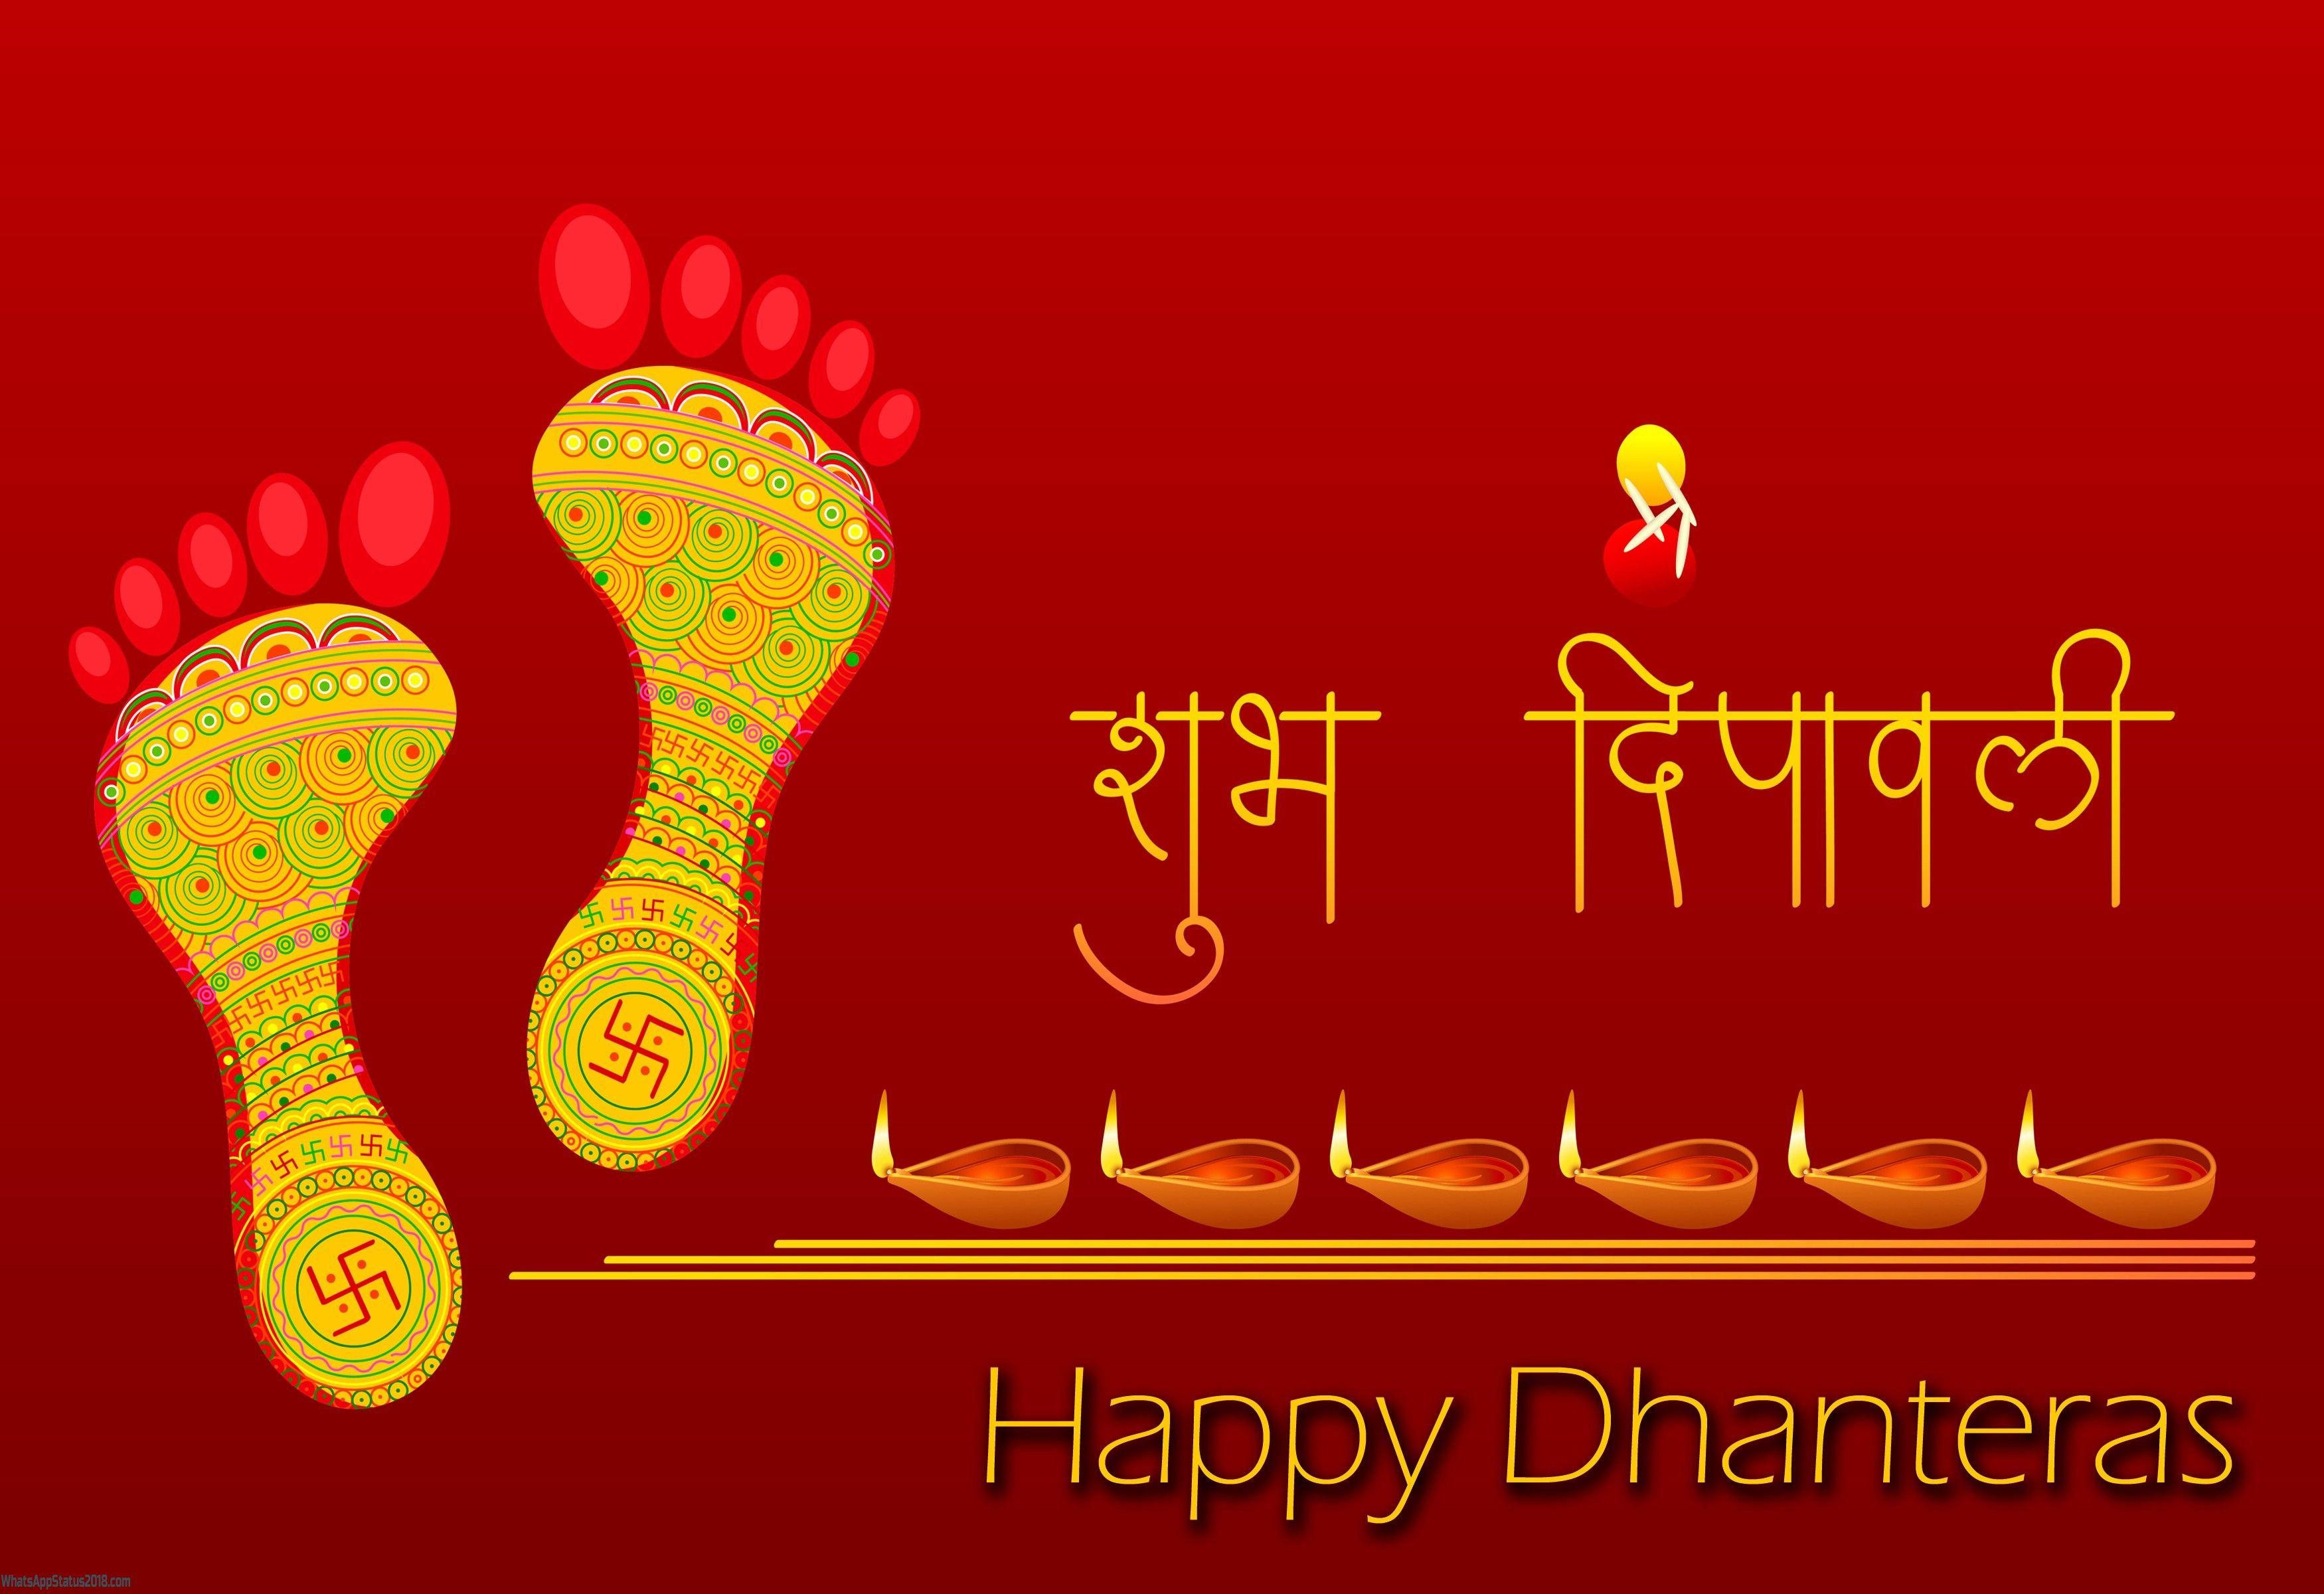 Happy Dhanteras 2018 Wishes. Happy Dhanteras Image. Dhanteras